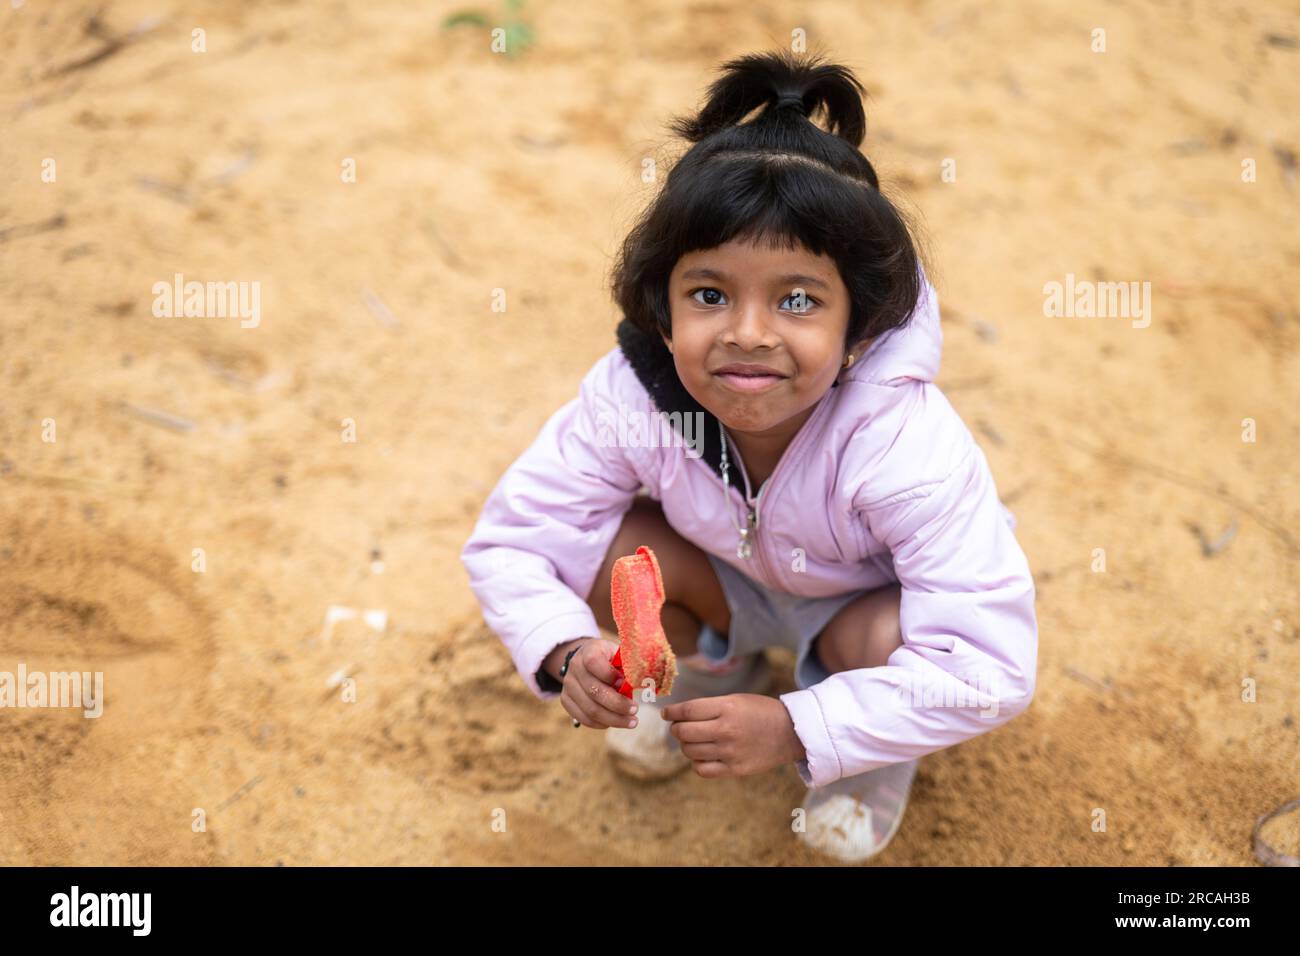 Ein kleines Mädchen hat viel Spaß beim Spielen im Schlamm. Sie lacht und lächelt, und sie sieht aus, als hätte sie die beste Zeit ihres Lebens. Stockfoto